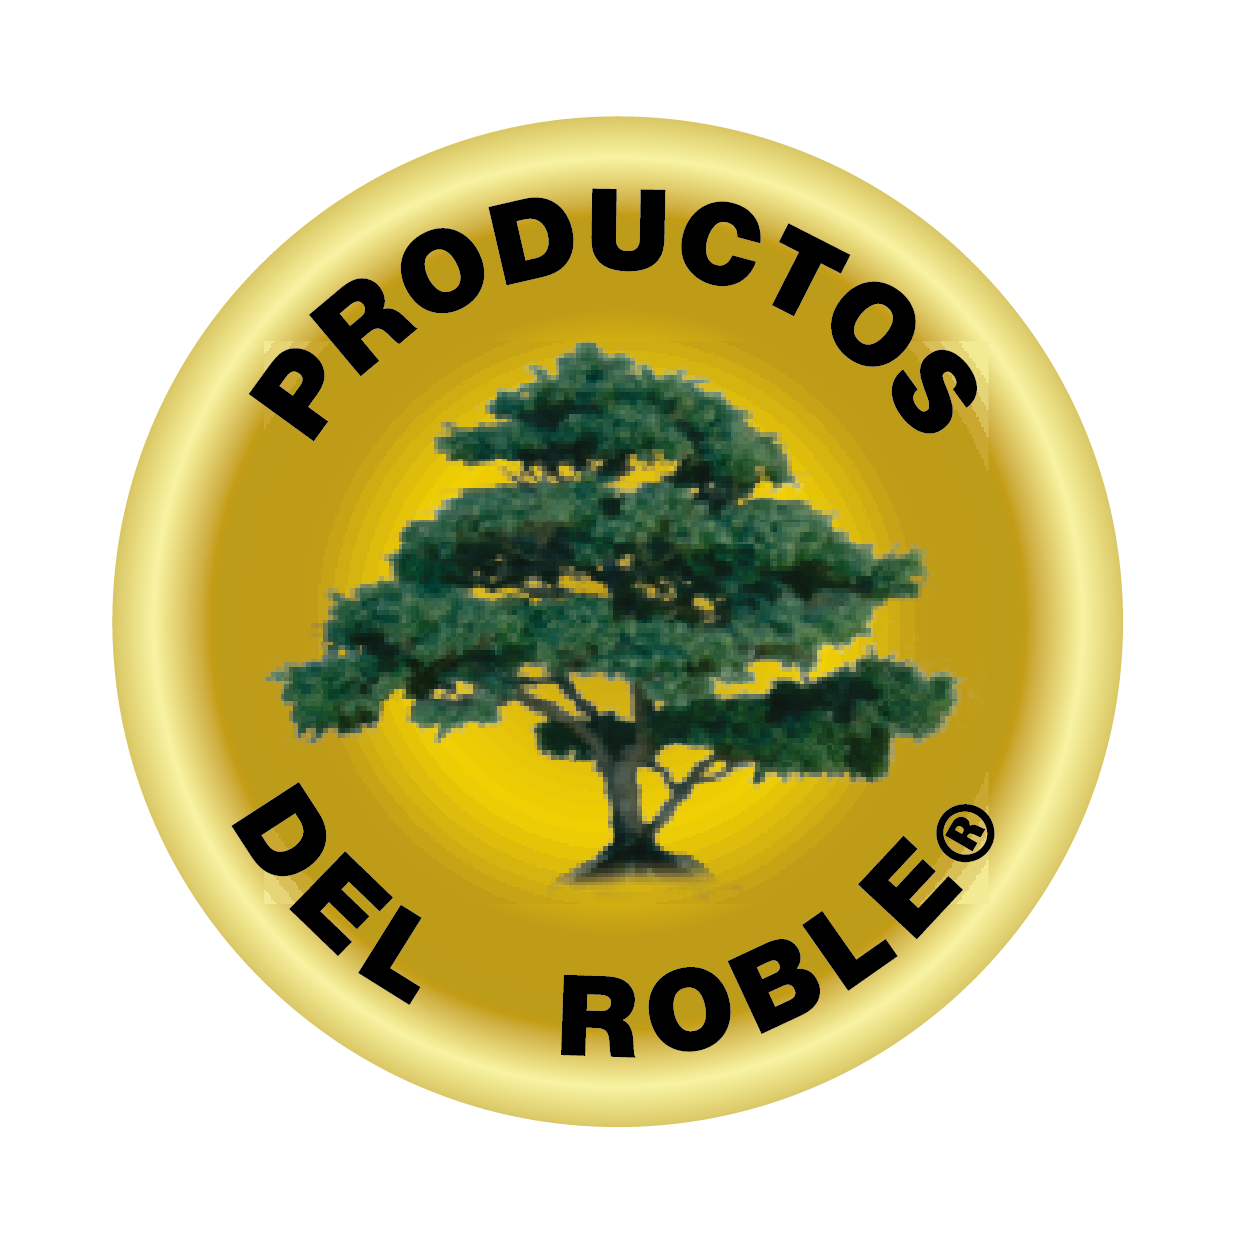 Productos Del Roble – Productos del roble